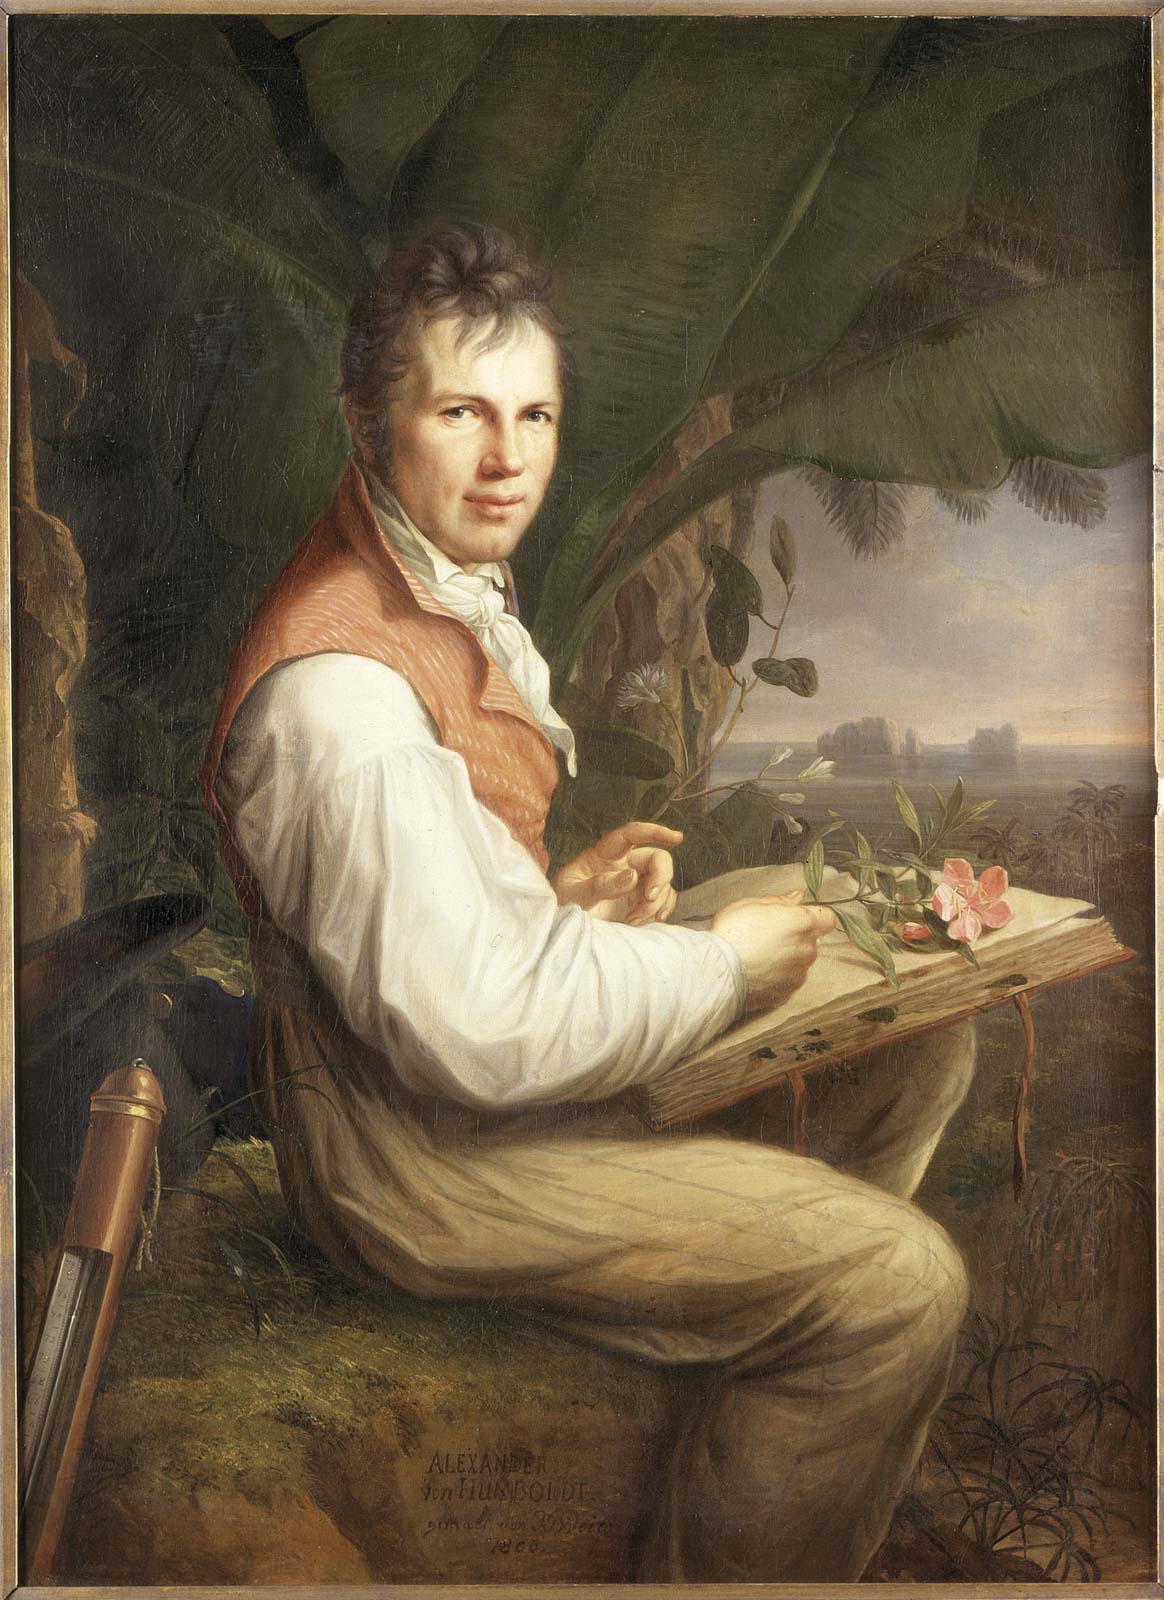 Alexander von Humboldt, *1769-1859+, German naturalist and geographer - Portrait, Painting by Friedrich Georg Weitsch, c1806